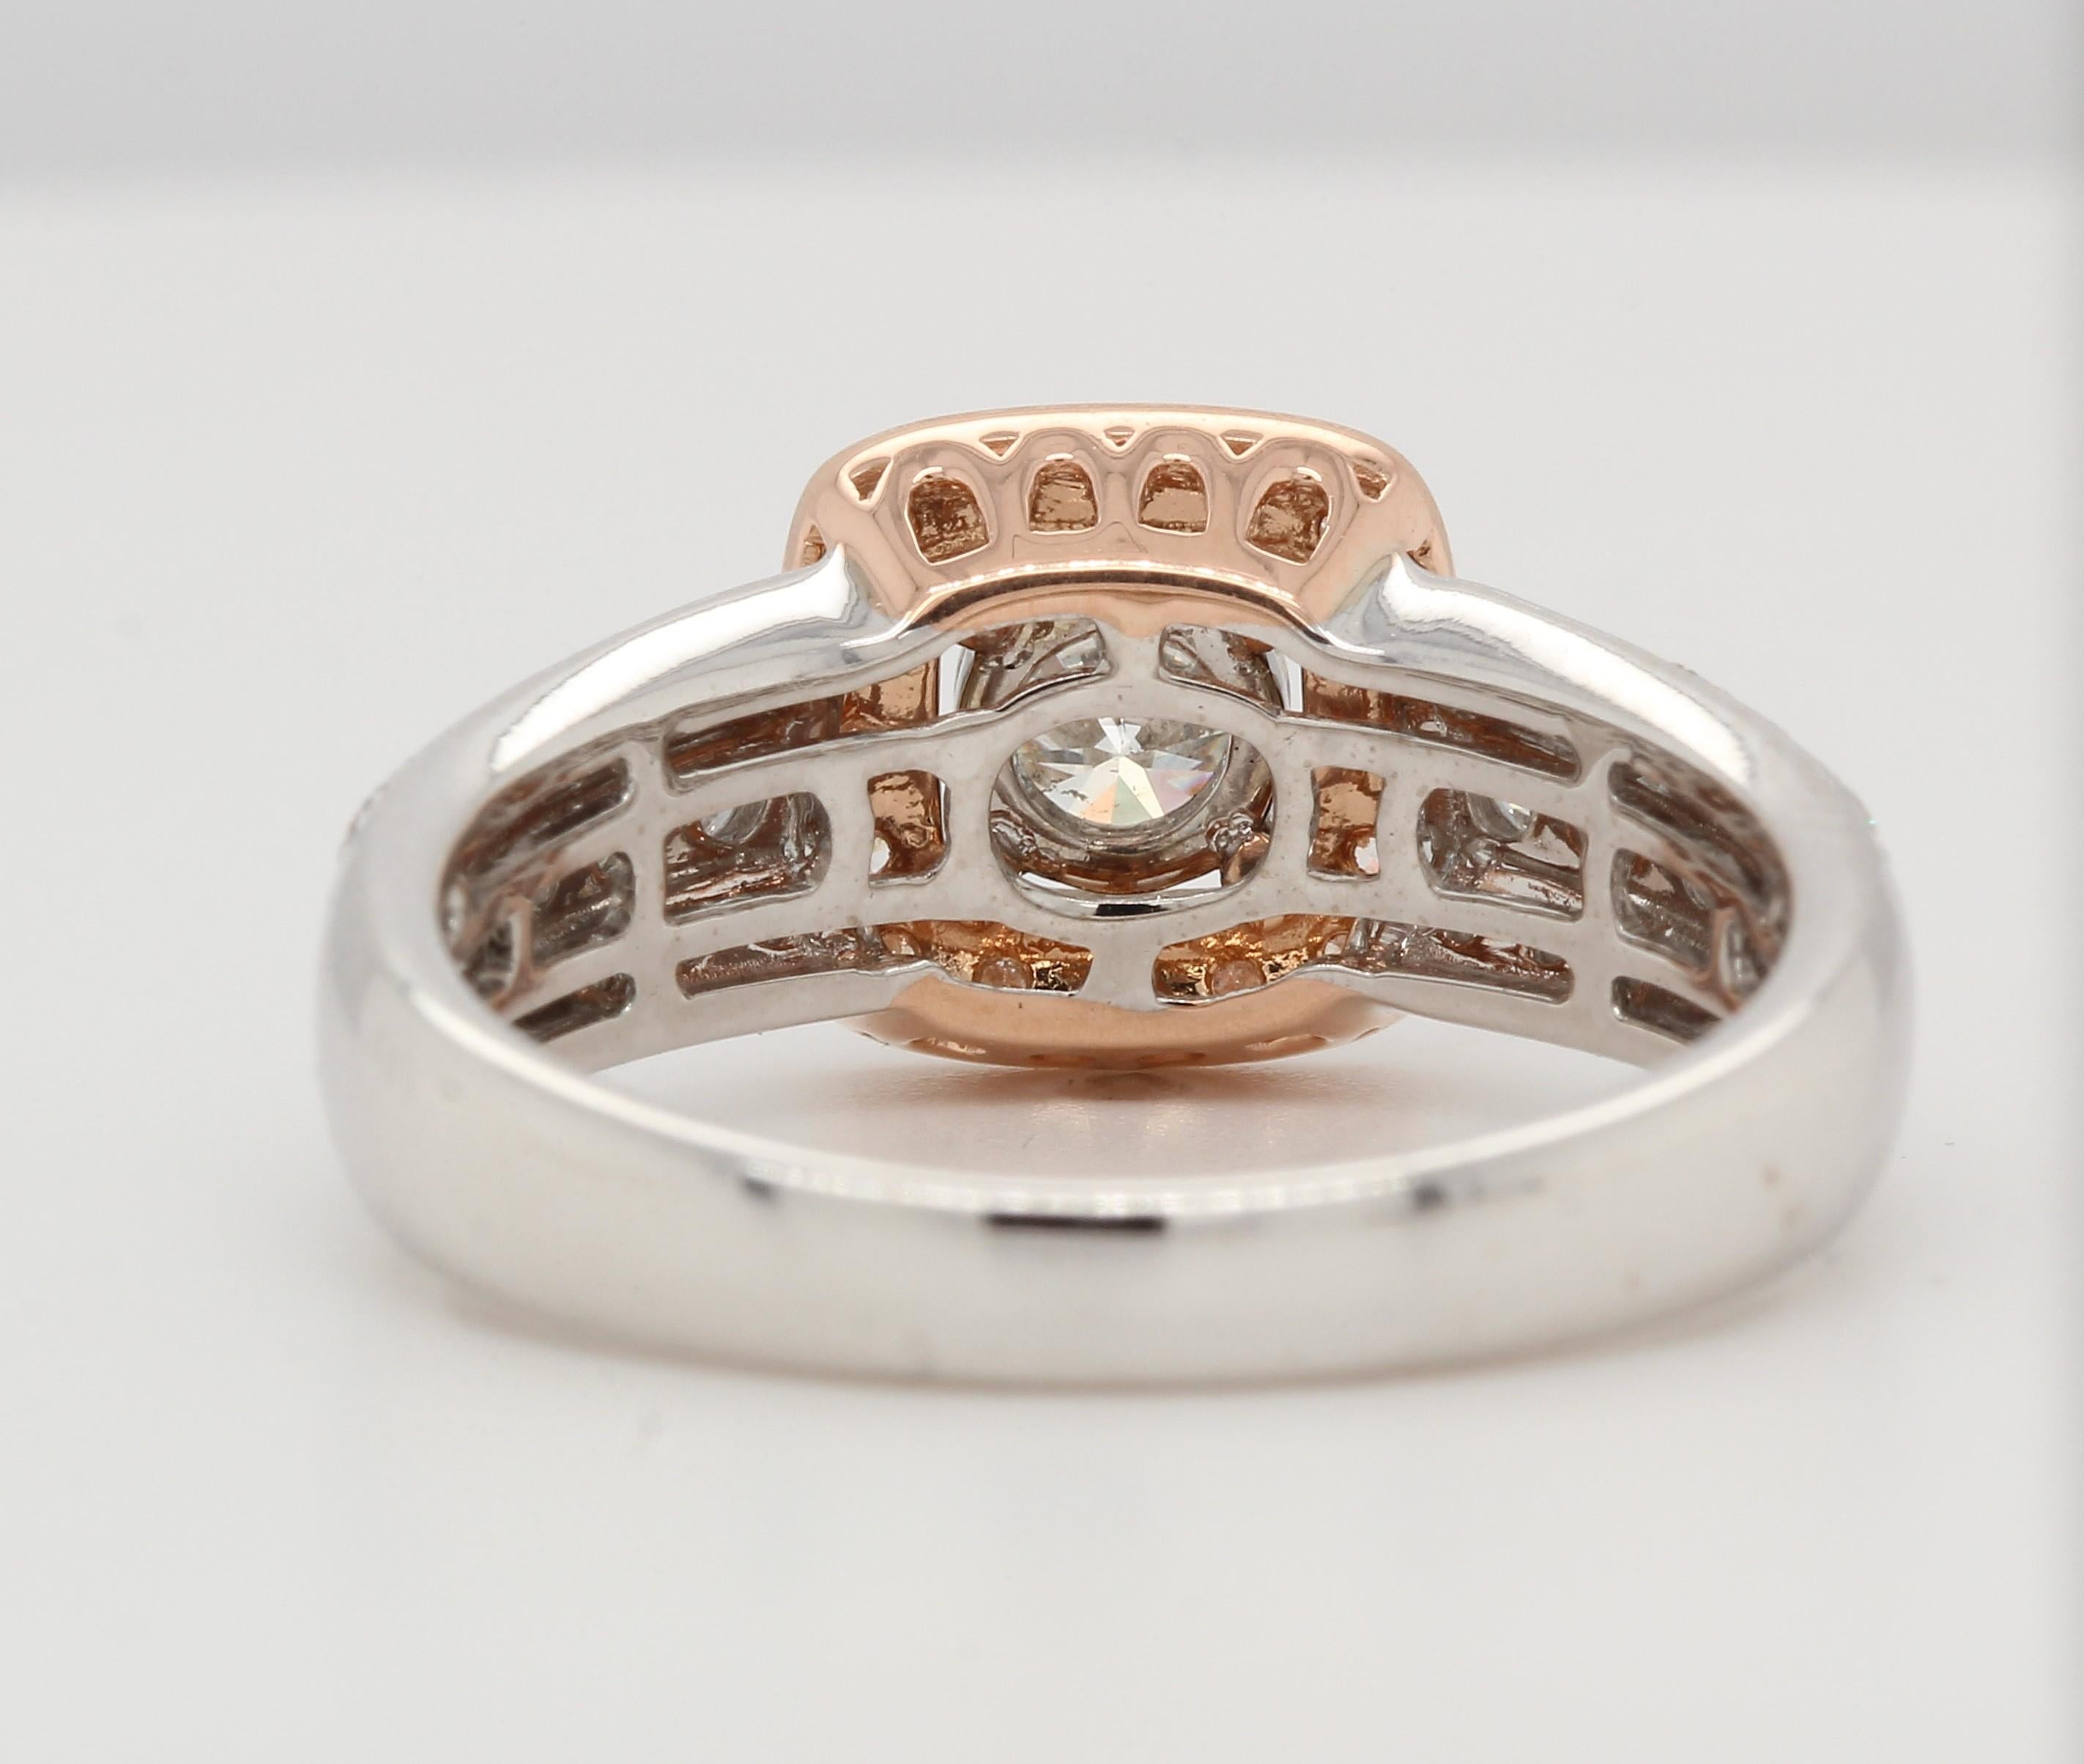 1.05 Carat Diamond Wedding Ring in 18 Karat Gold For Sale 2